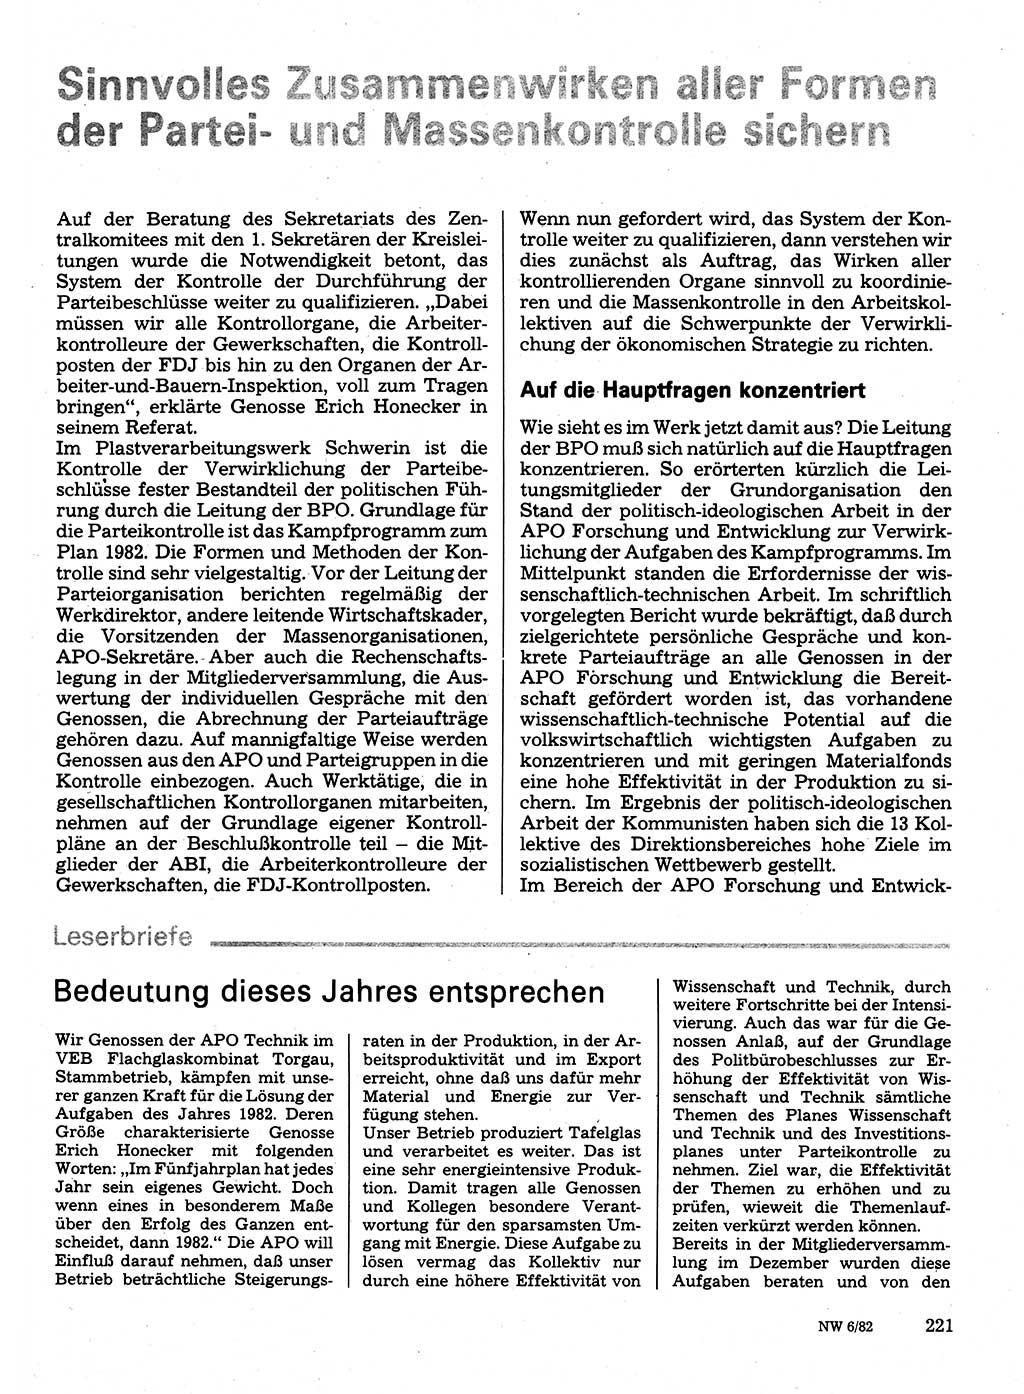 Neuer Weg (NW), Organ des Zentralkomitees (ZK) der SED (Sozialistische Einheitspartei Deutschlands) für Fragen des Parteilebens, 37. Jahrgang [Deutsche Demokratische Republik (DDR)] 1982, Seite 221 (NW ZK SED DDR 1982, S. 221)